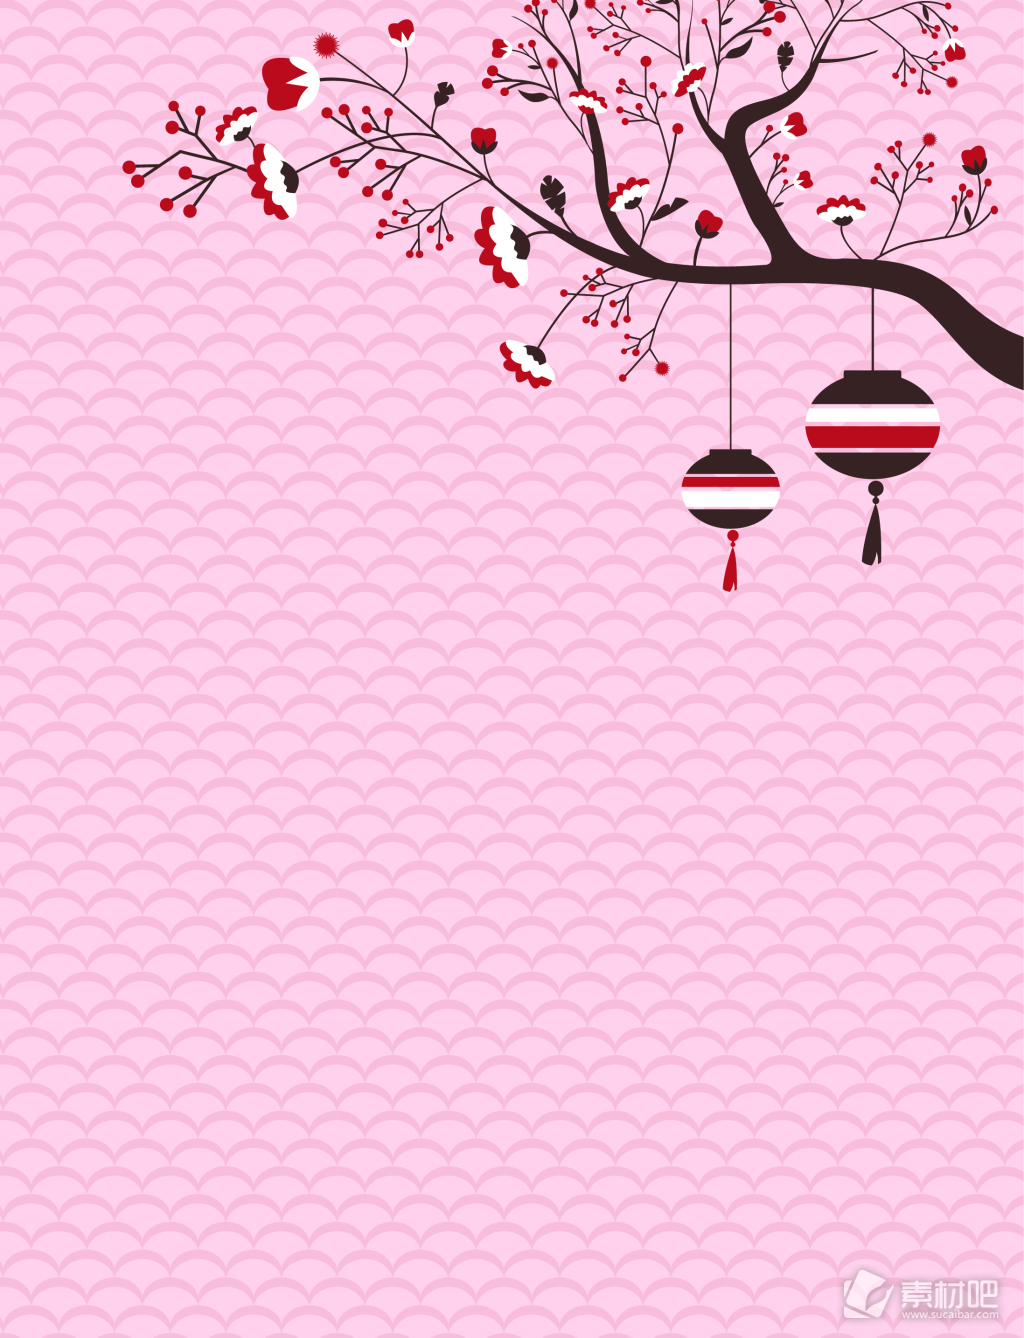 中国风传统手绘梅花灯笼背景素材